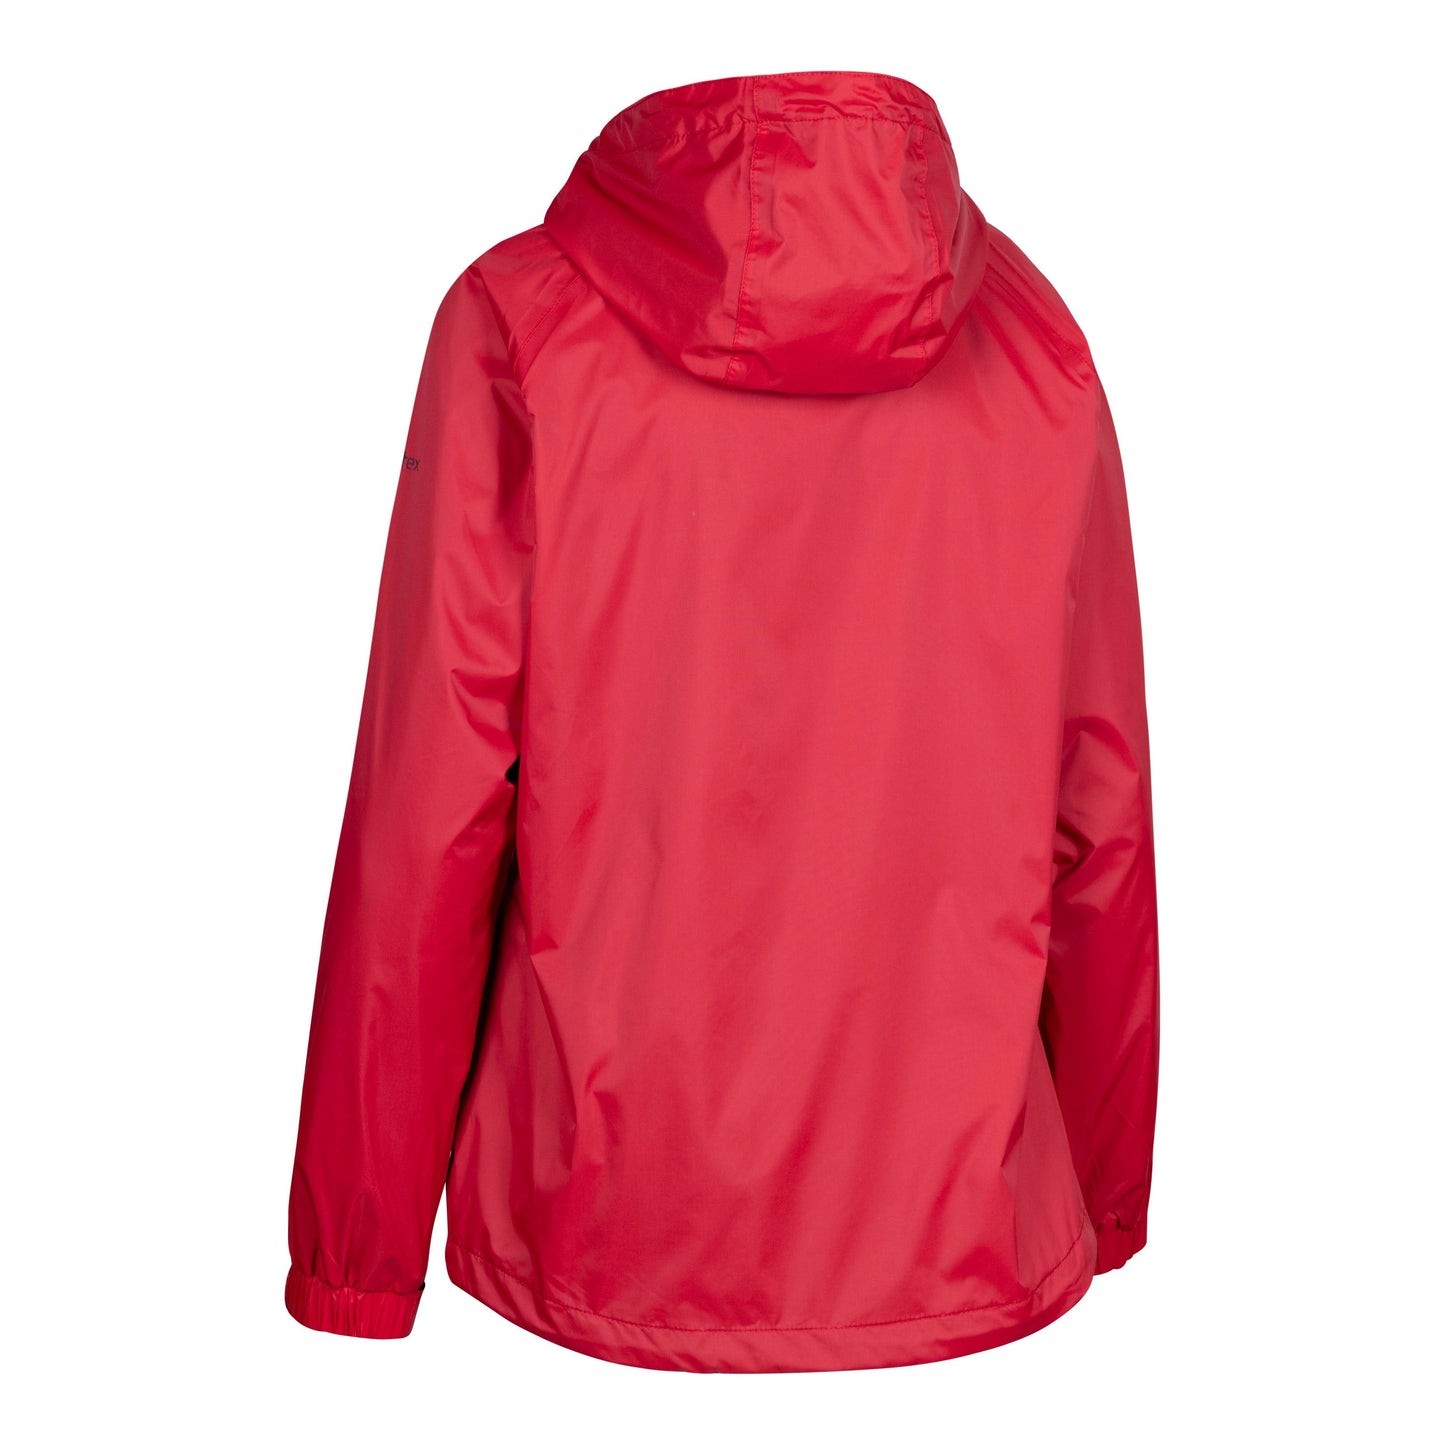 Tayah 2 Women's Unpadded Waterproof Jacket in Red